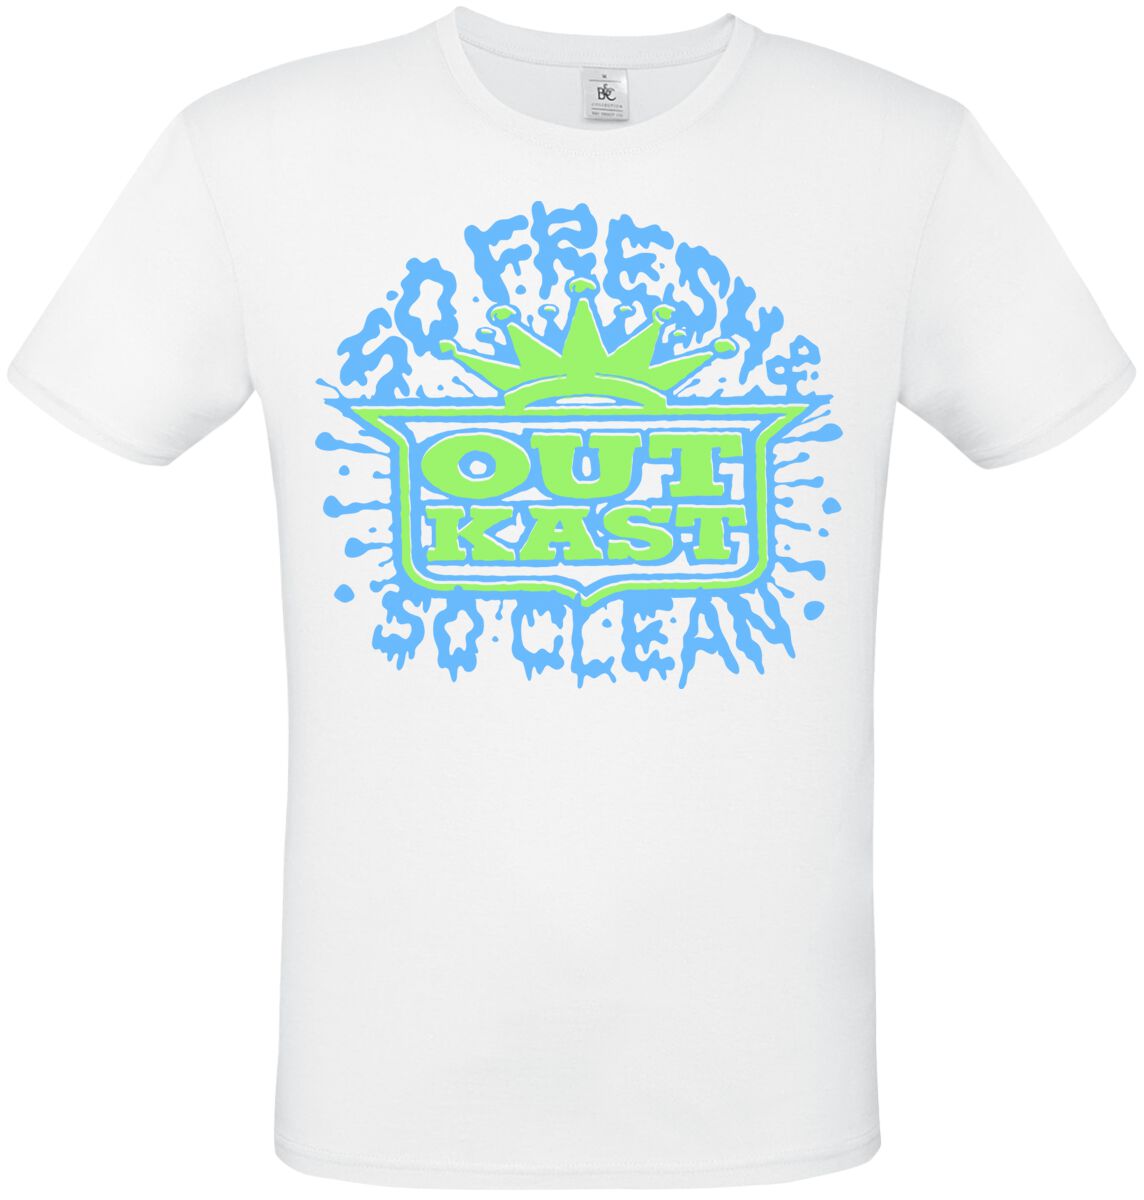 T-Shirt Manches courtes de OutKast - So Fresh So Clean - S à 3XL - pour Homme - blanc